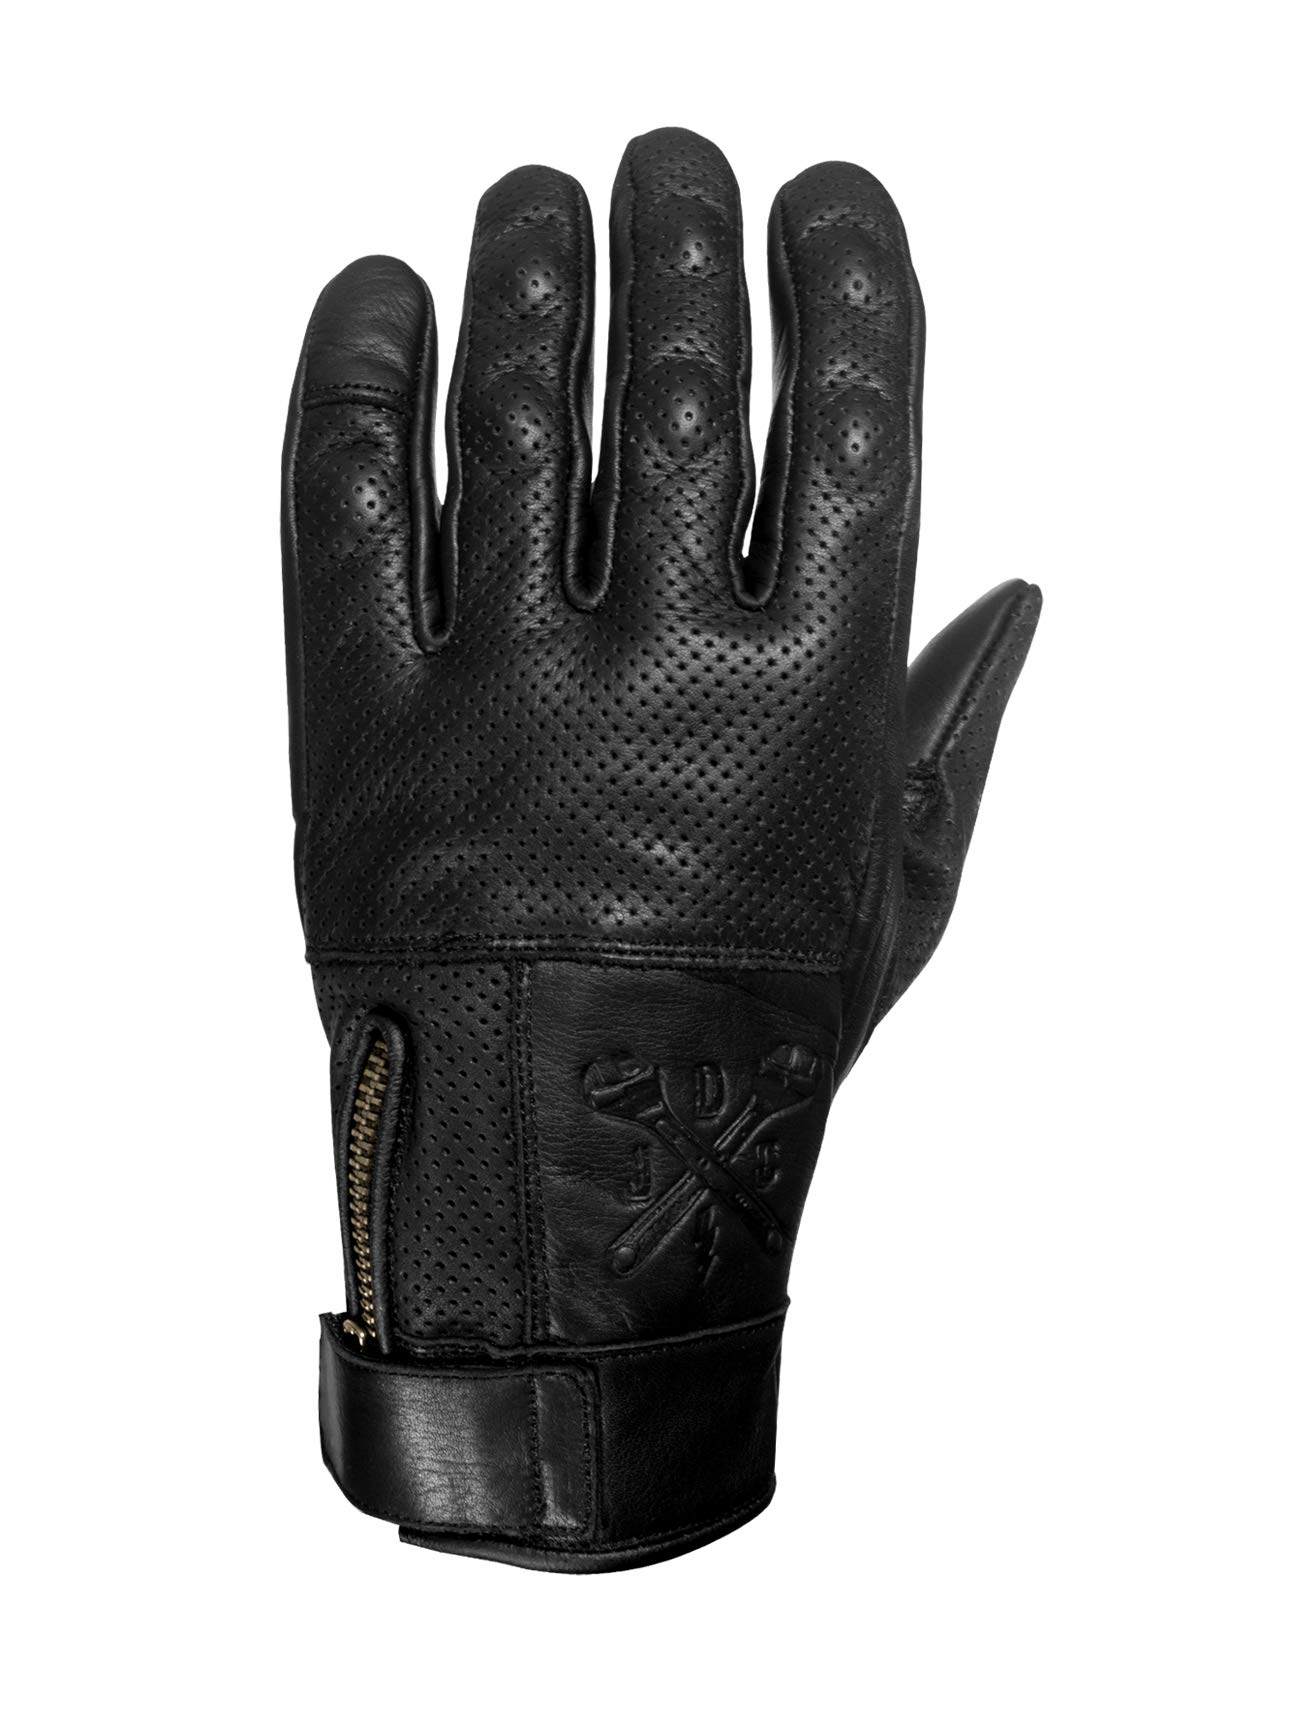 John Doe Handschuhe, Black,2XL von John Doe